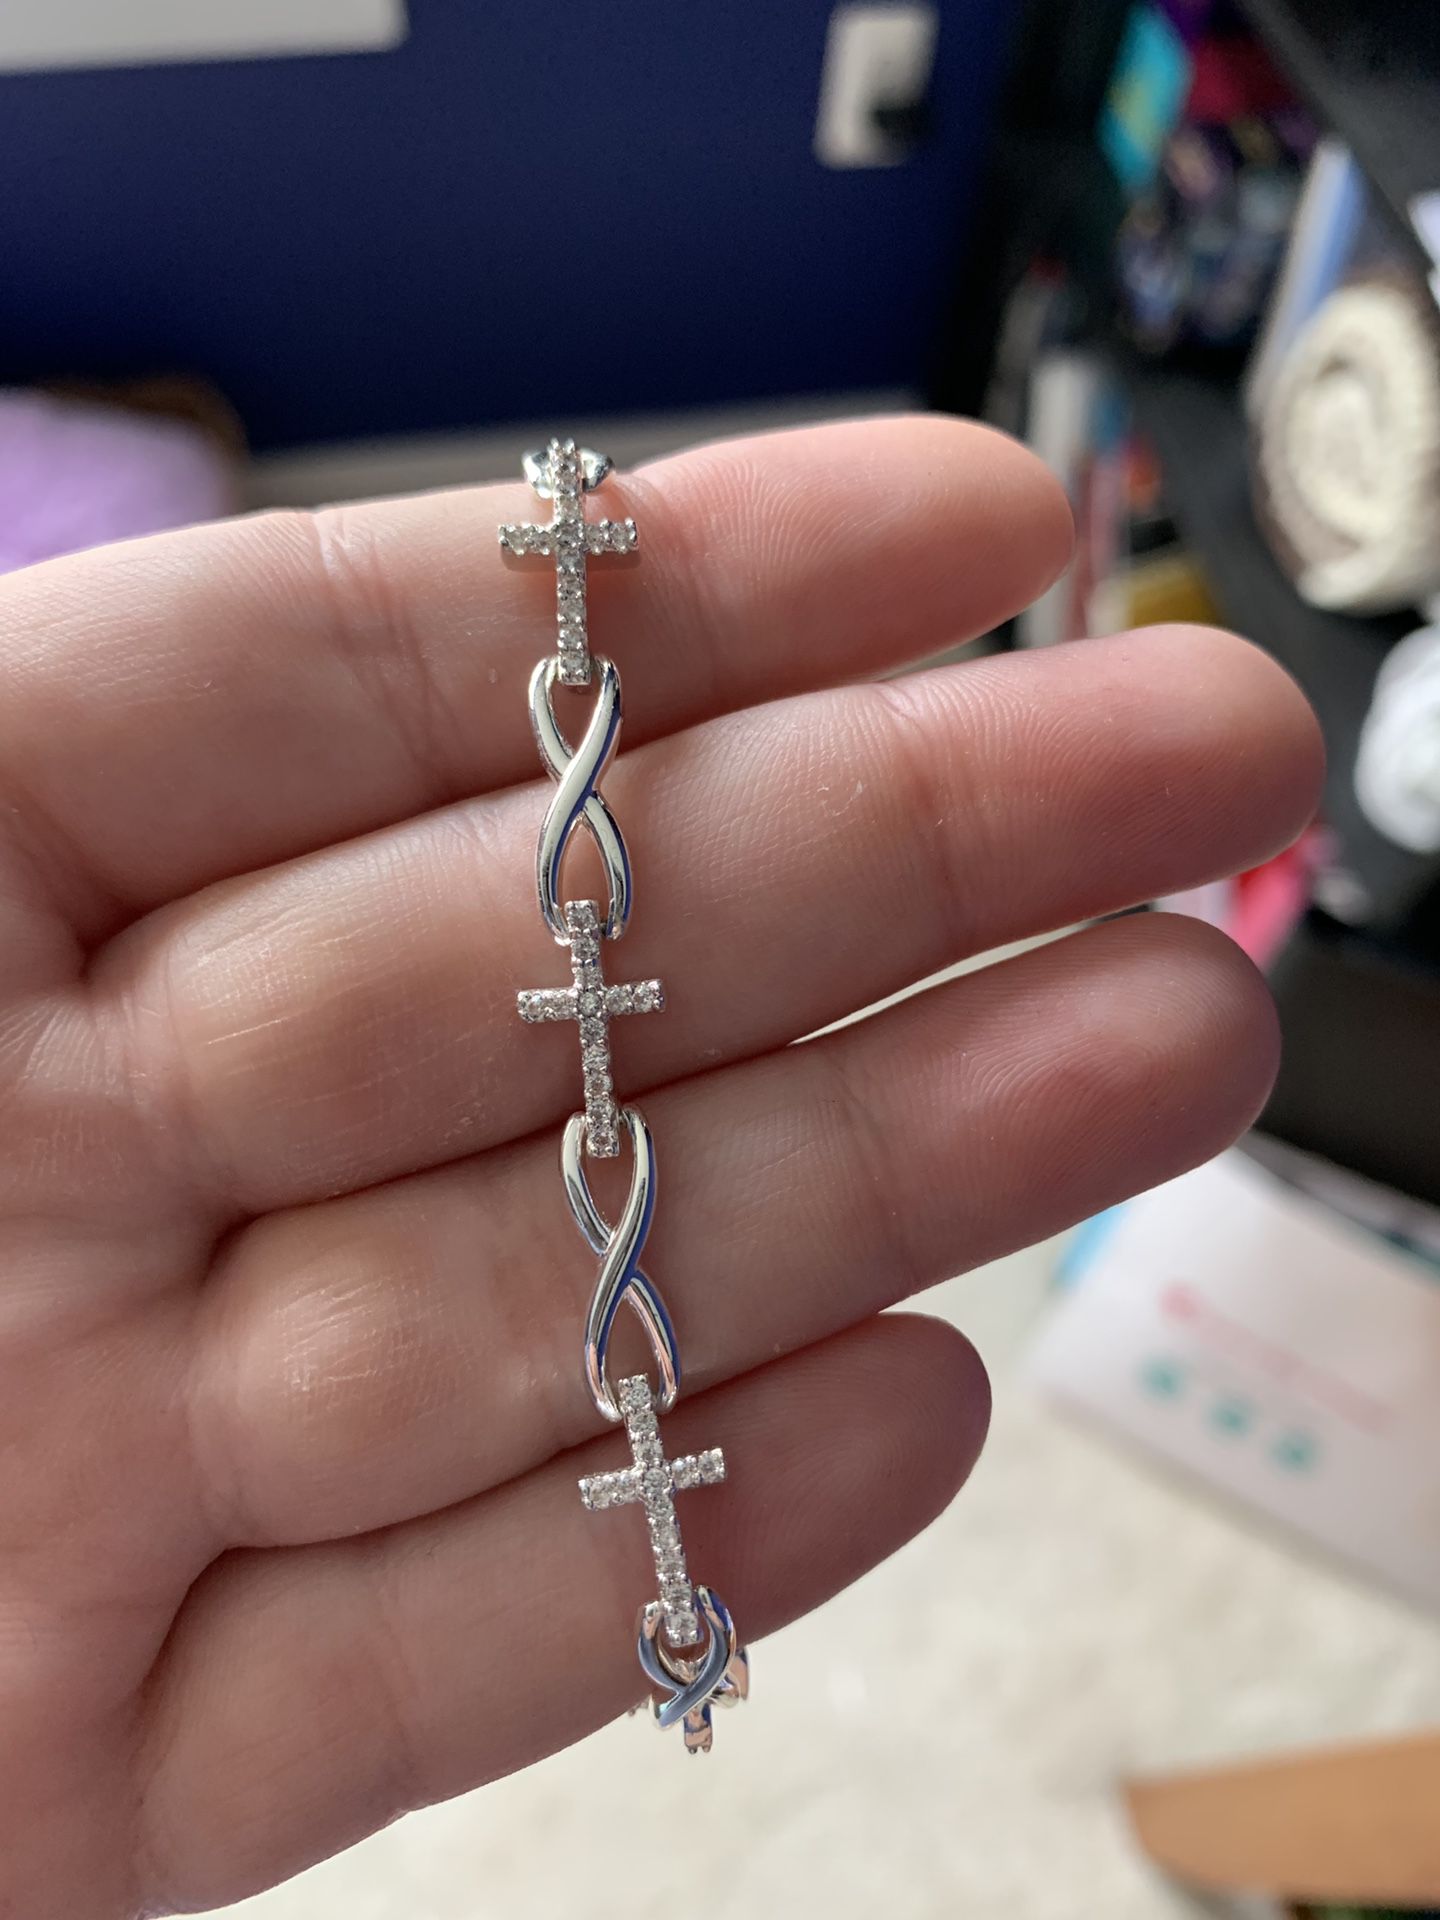 Sterling silver cross bracelet with heart